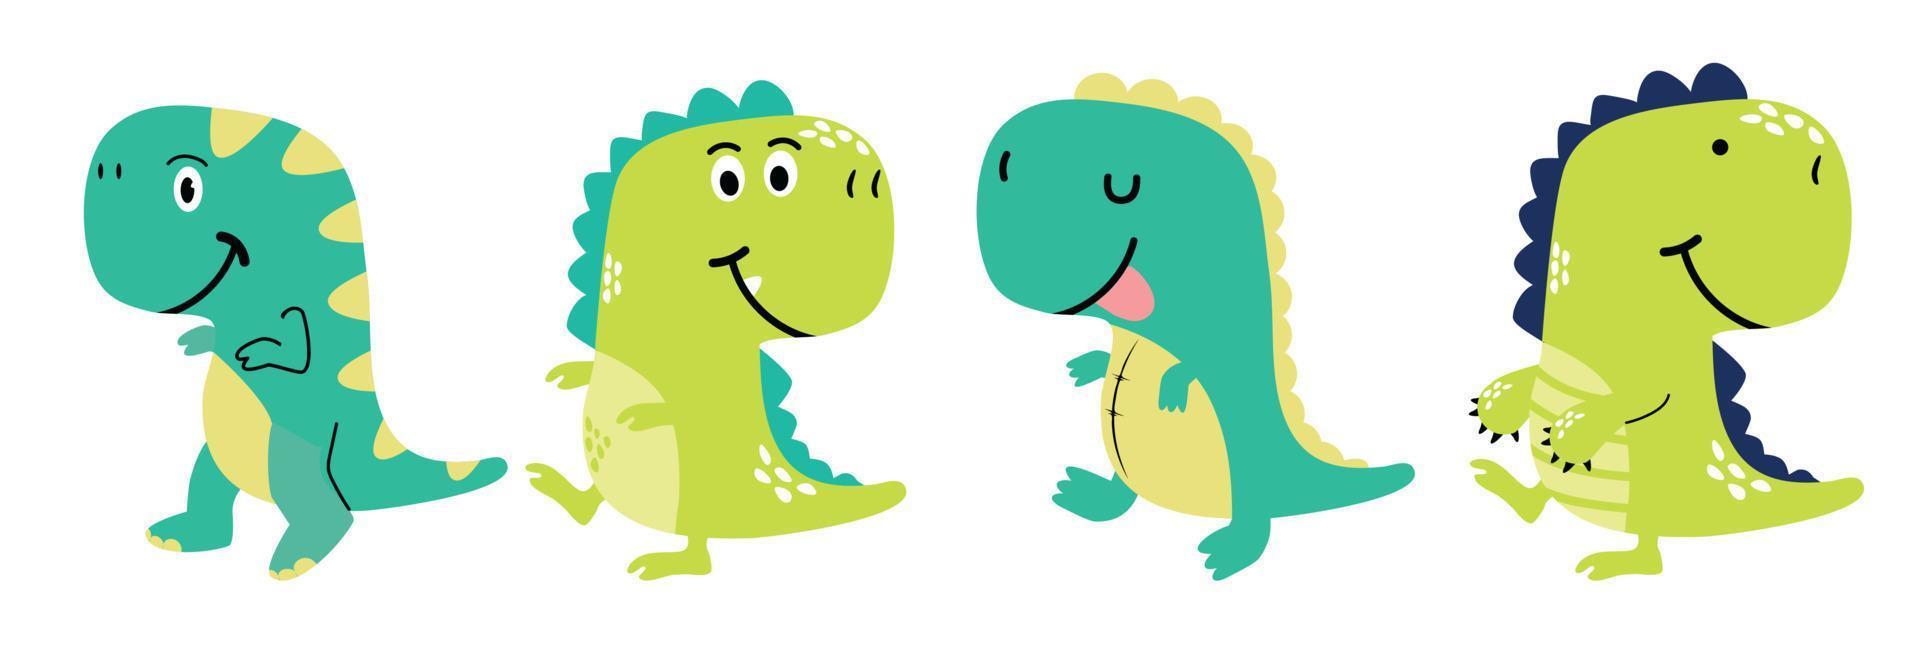 mignon, dinosaure, tyrannosaure, dessin animé, ensemble vecteur